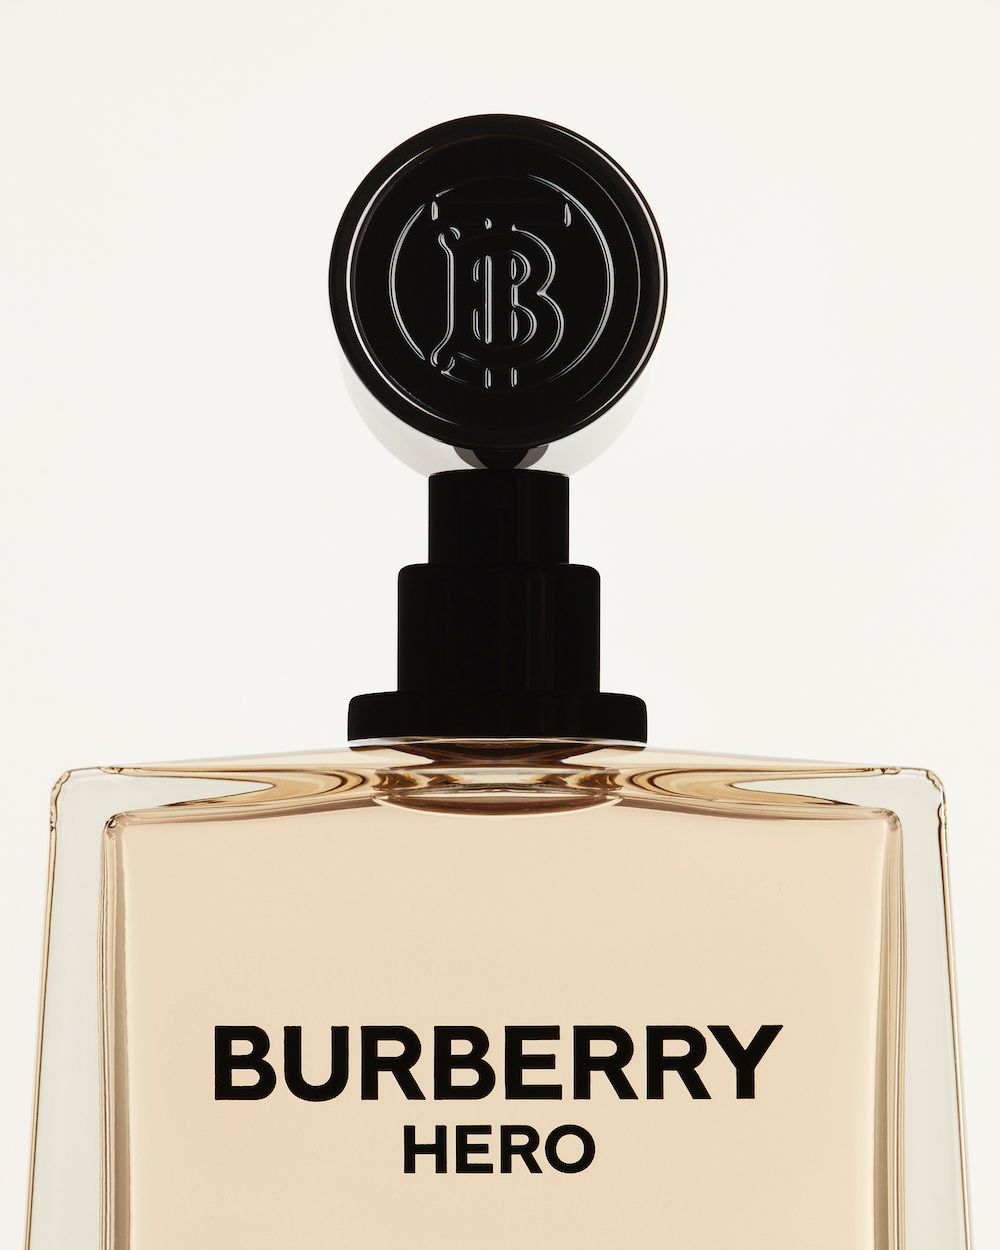 Burberry Hero, Parfum Cowok yang Beraroma Maskulin dan Berani